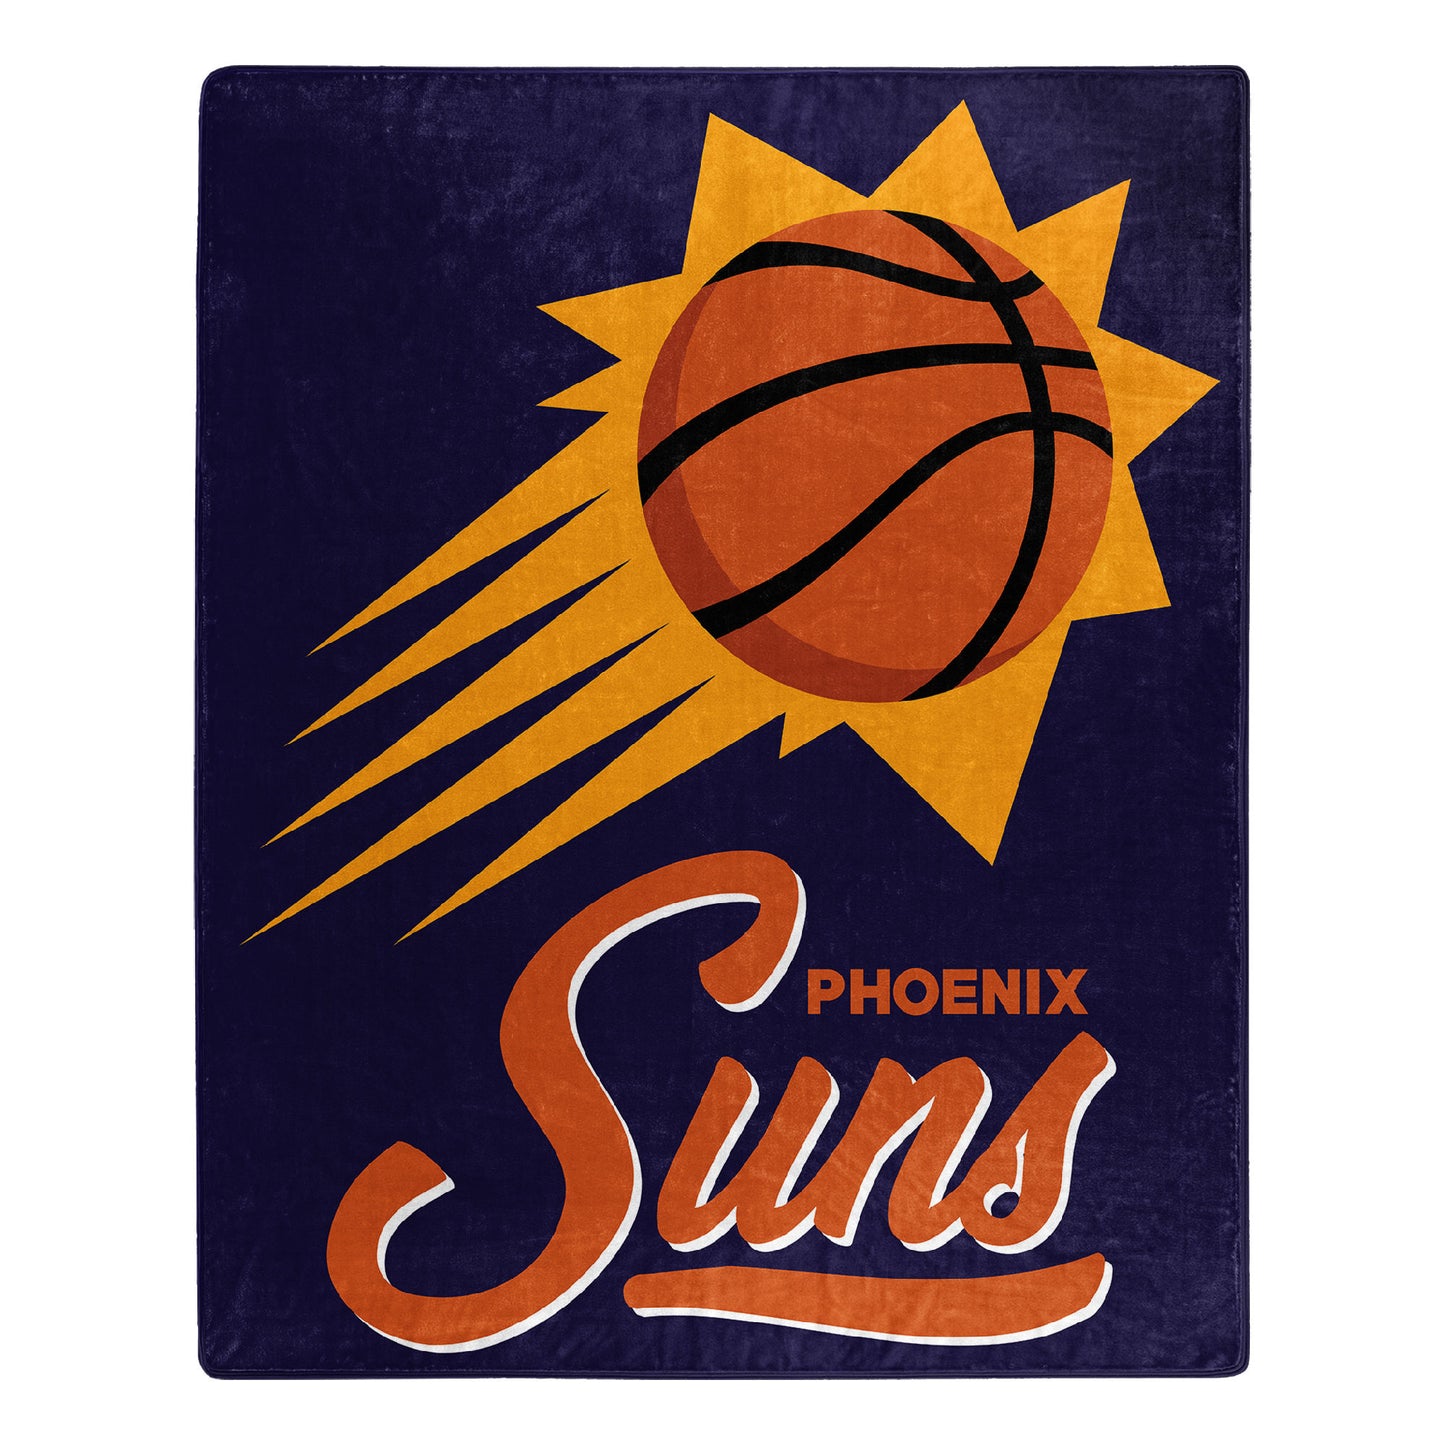 Suns OFFICIAL NBA "Signature" Raschel Throw Blanket 50"x60"